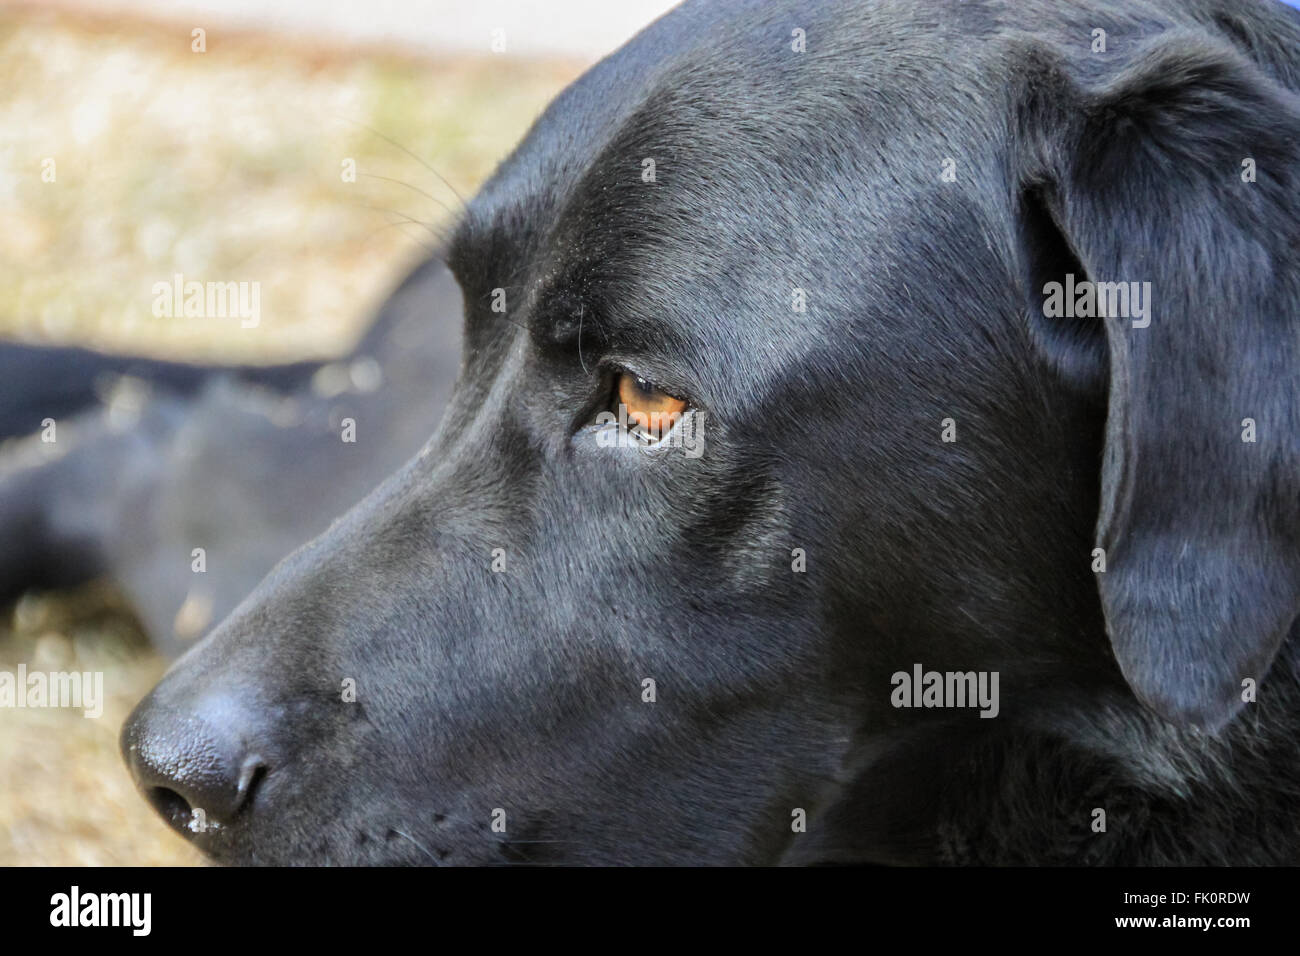 The head of a black Labrador Retriever Stock Photo